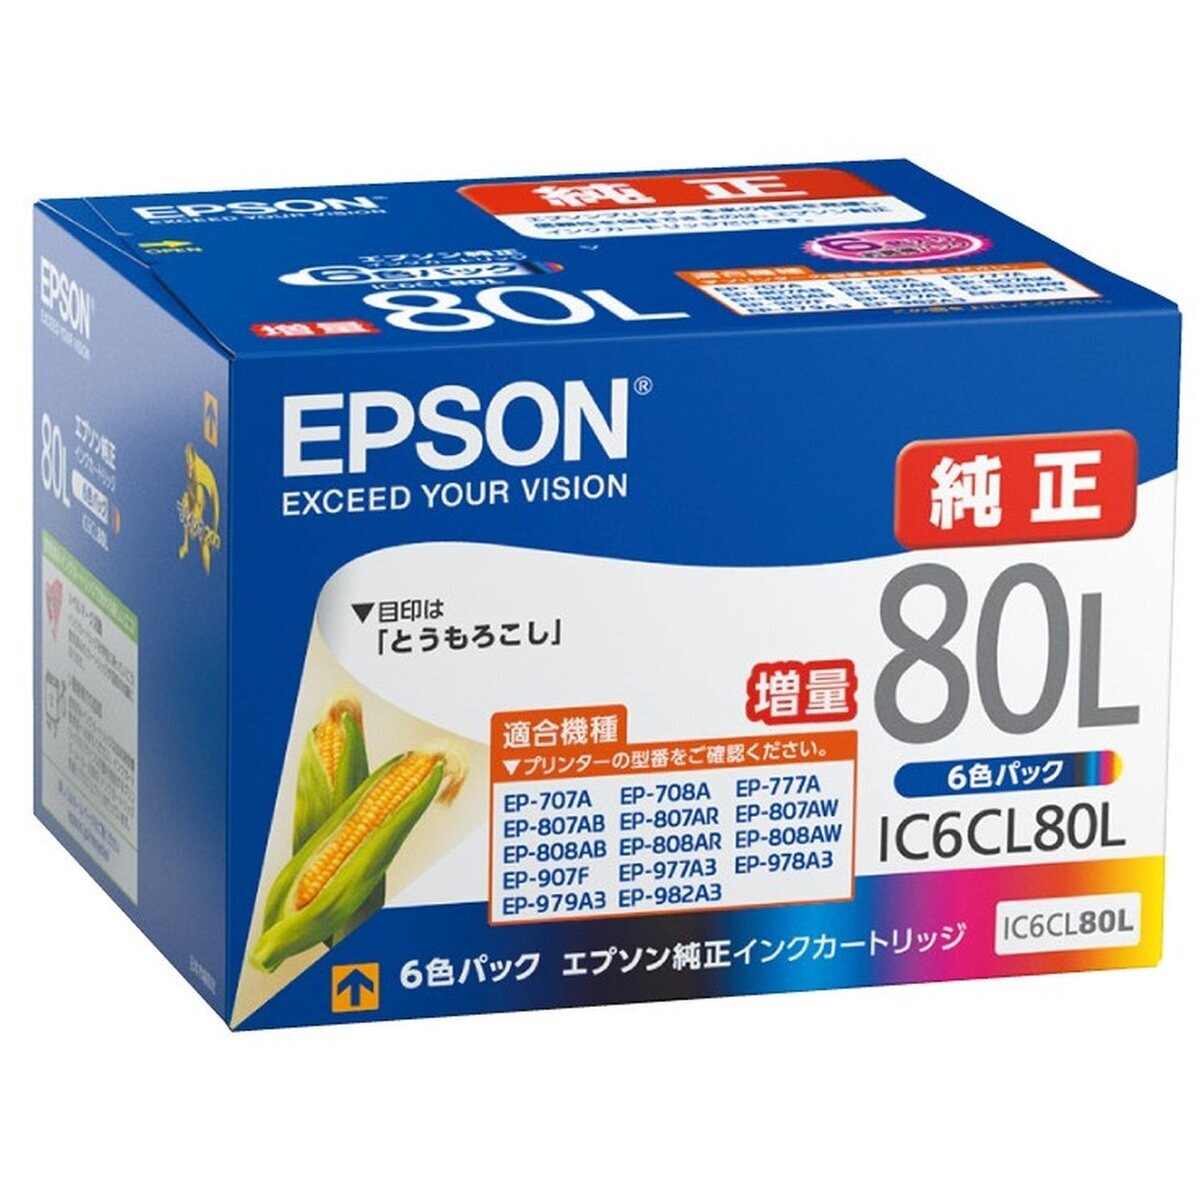 品質検査済 EPSON純正インクカートリッジ6色パック baimmigration.com